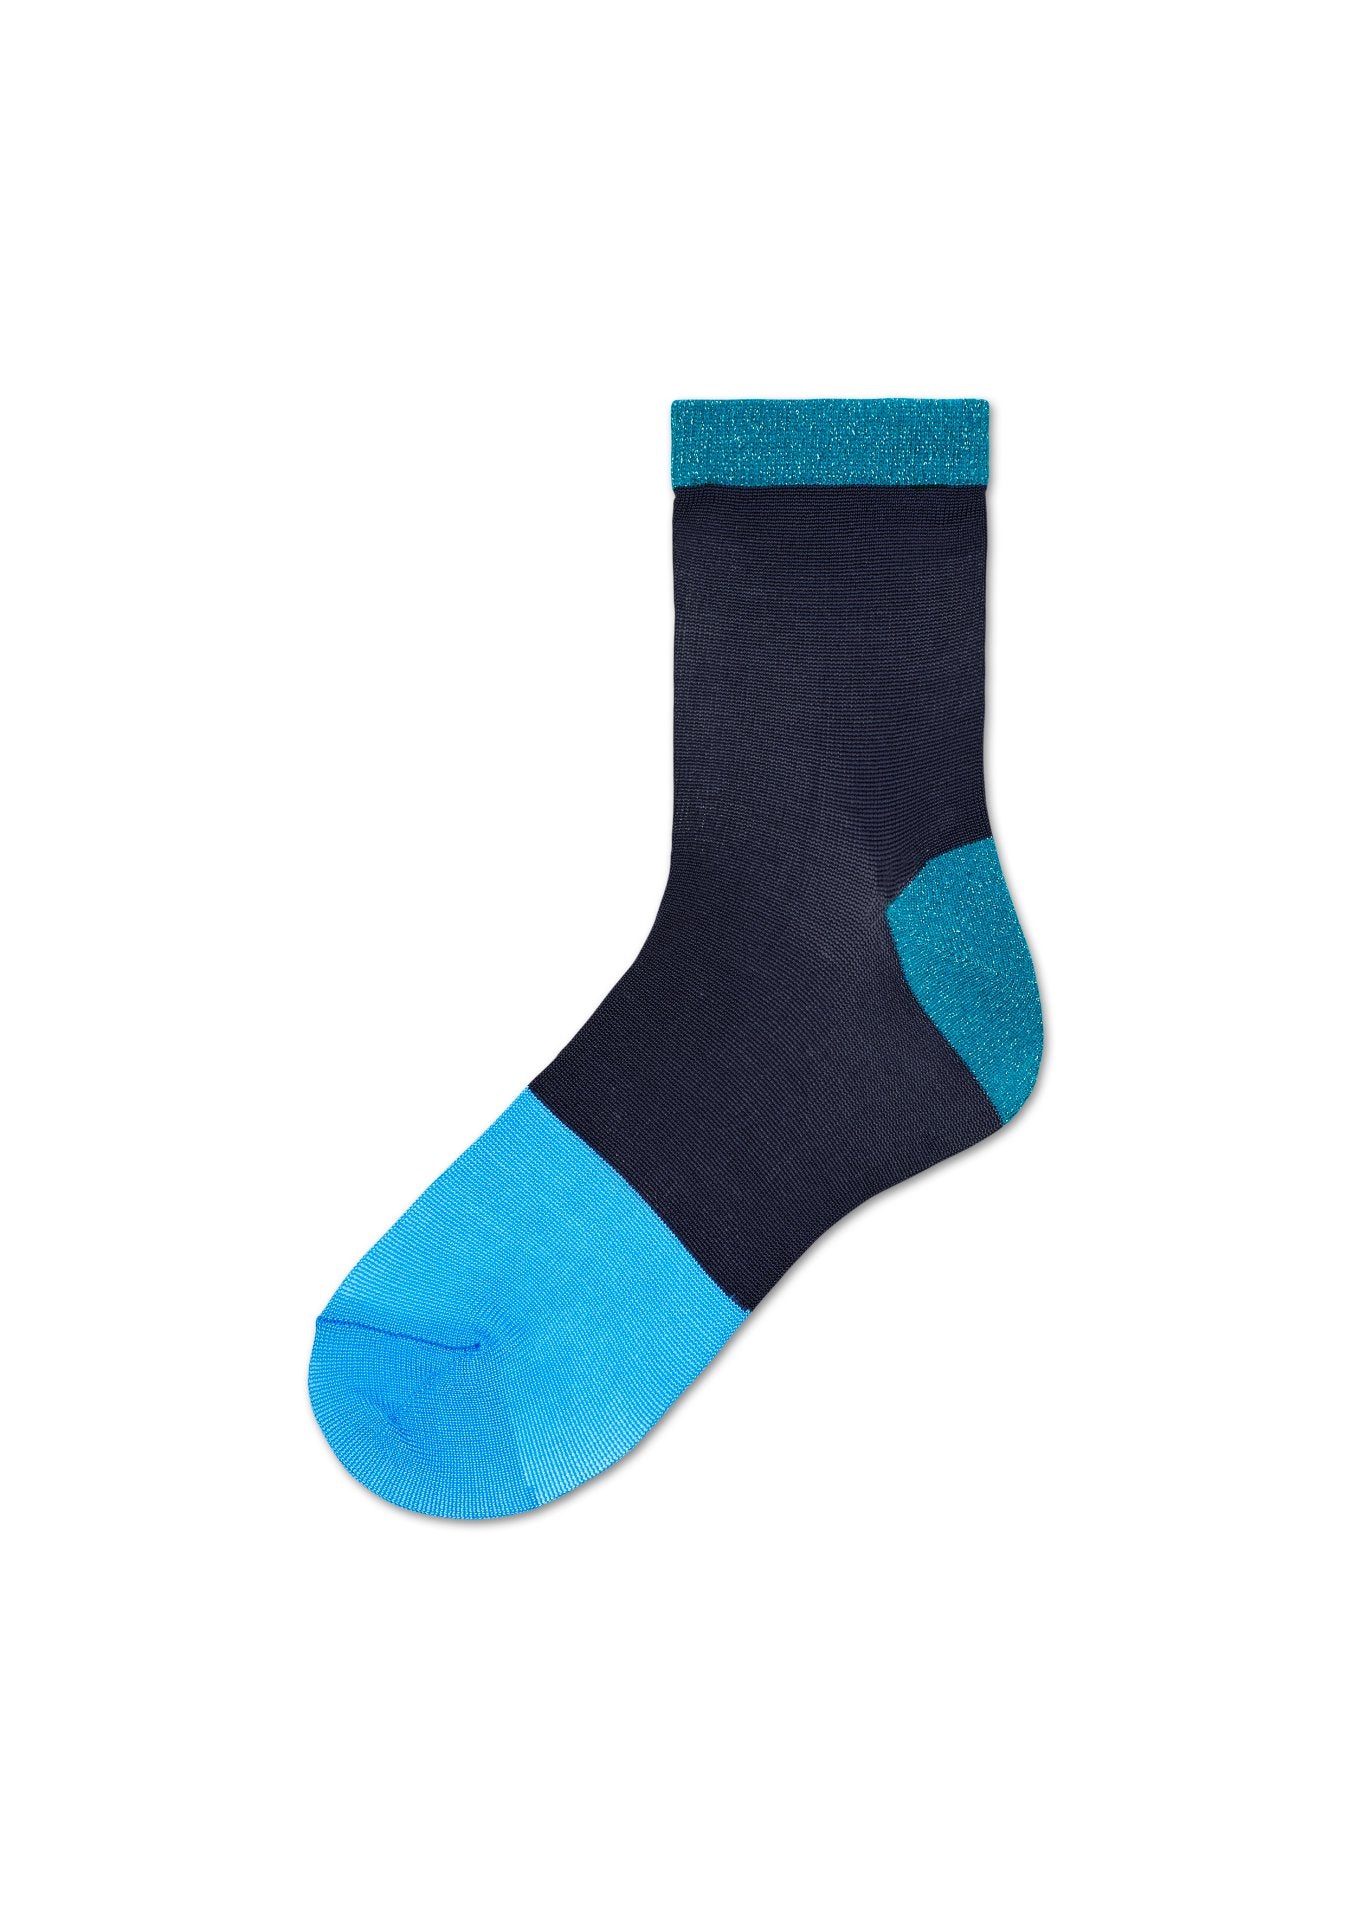 Dámské tmavě modré ponožky Happy Socks Liza // kolekce Hysteria